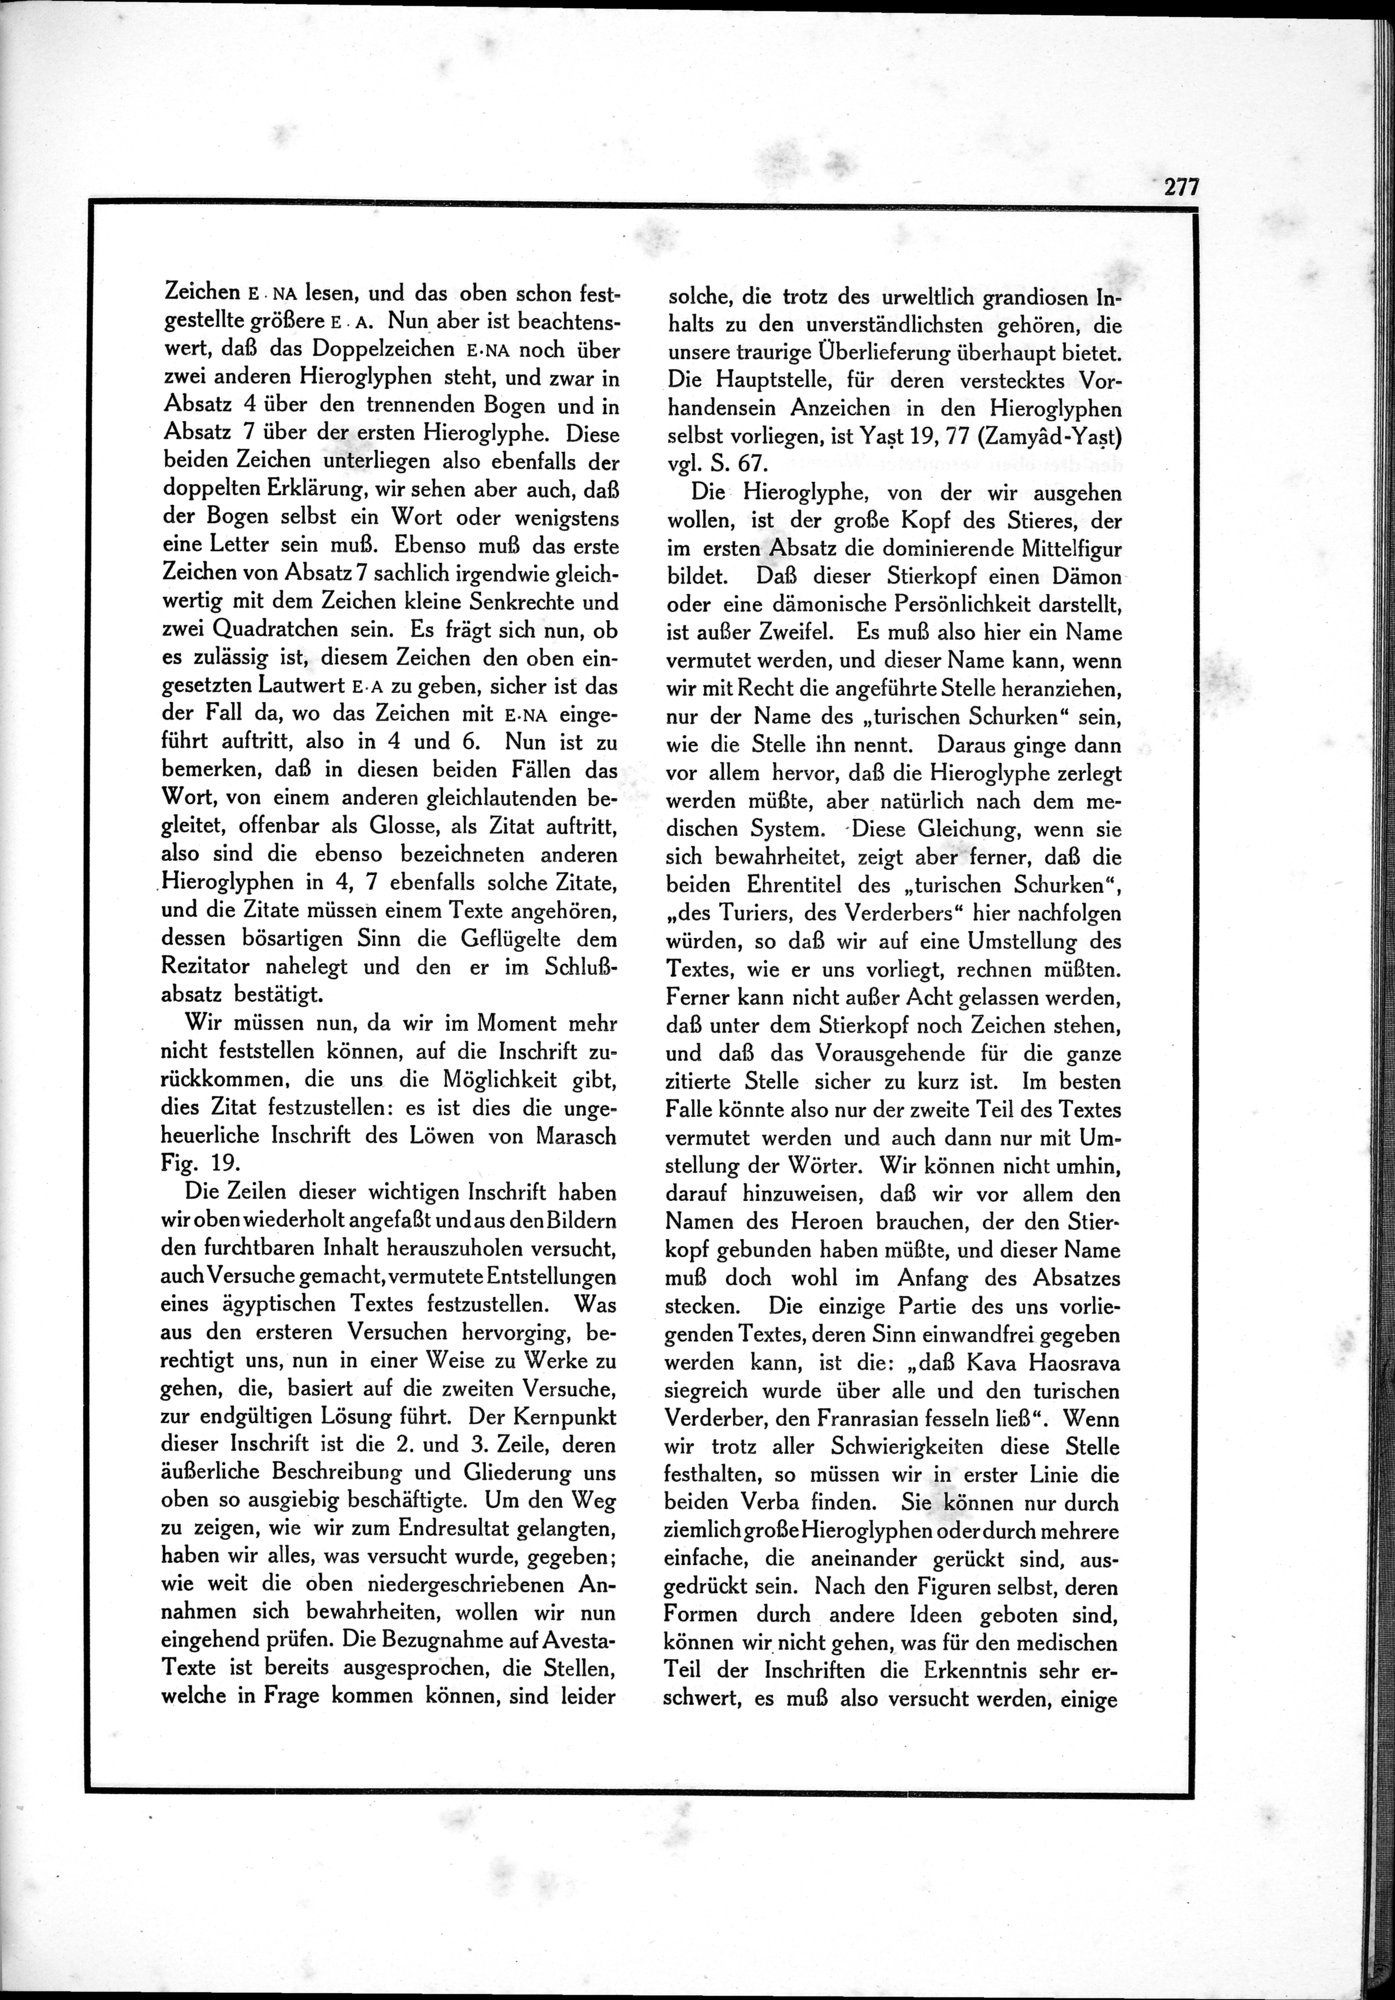 Die Teufel des Avesta und Ihre Beziehungen zur Ikonographie des Buddhismus Zentral-Asiens : vol.1 / Page 281 (Grayscale High Resolution Image)